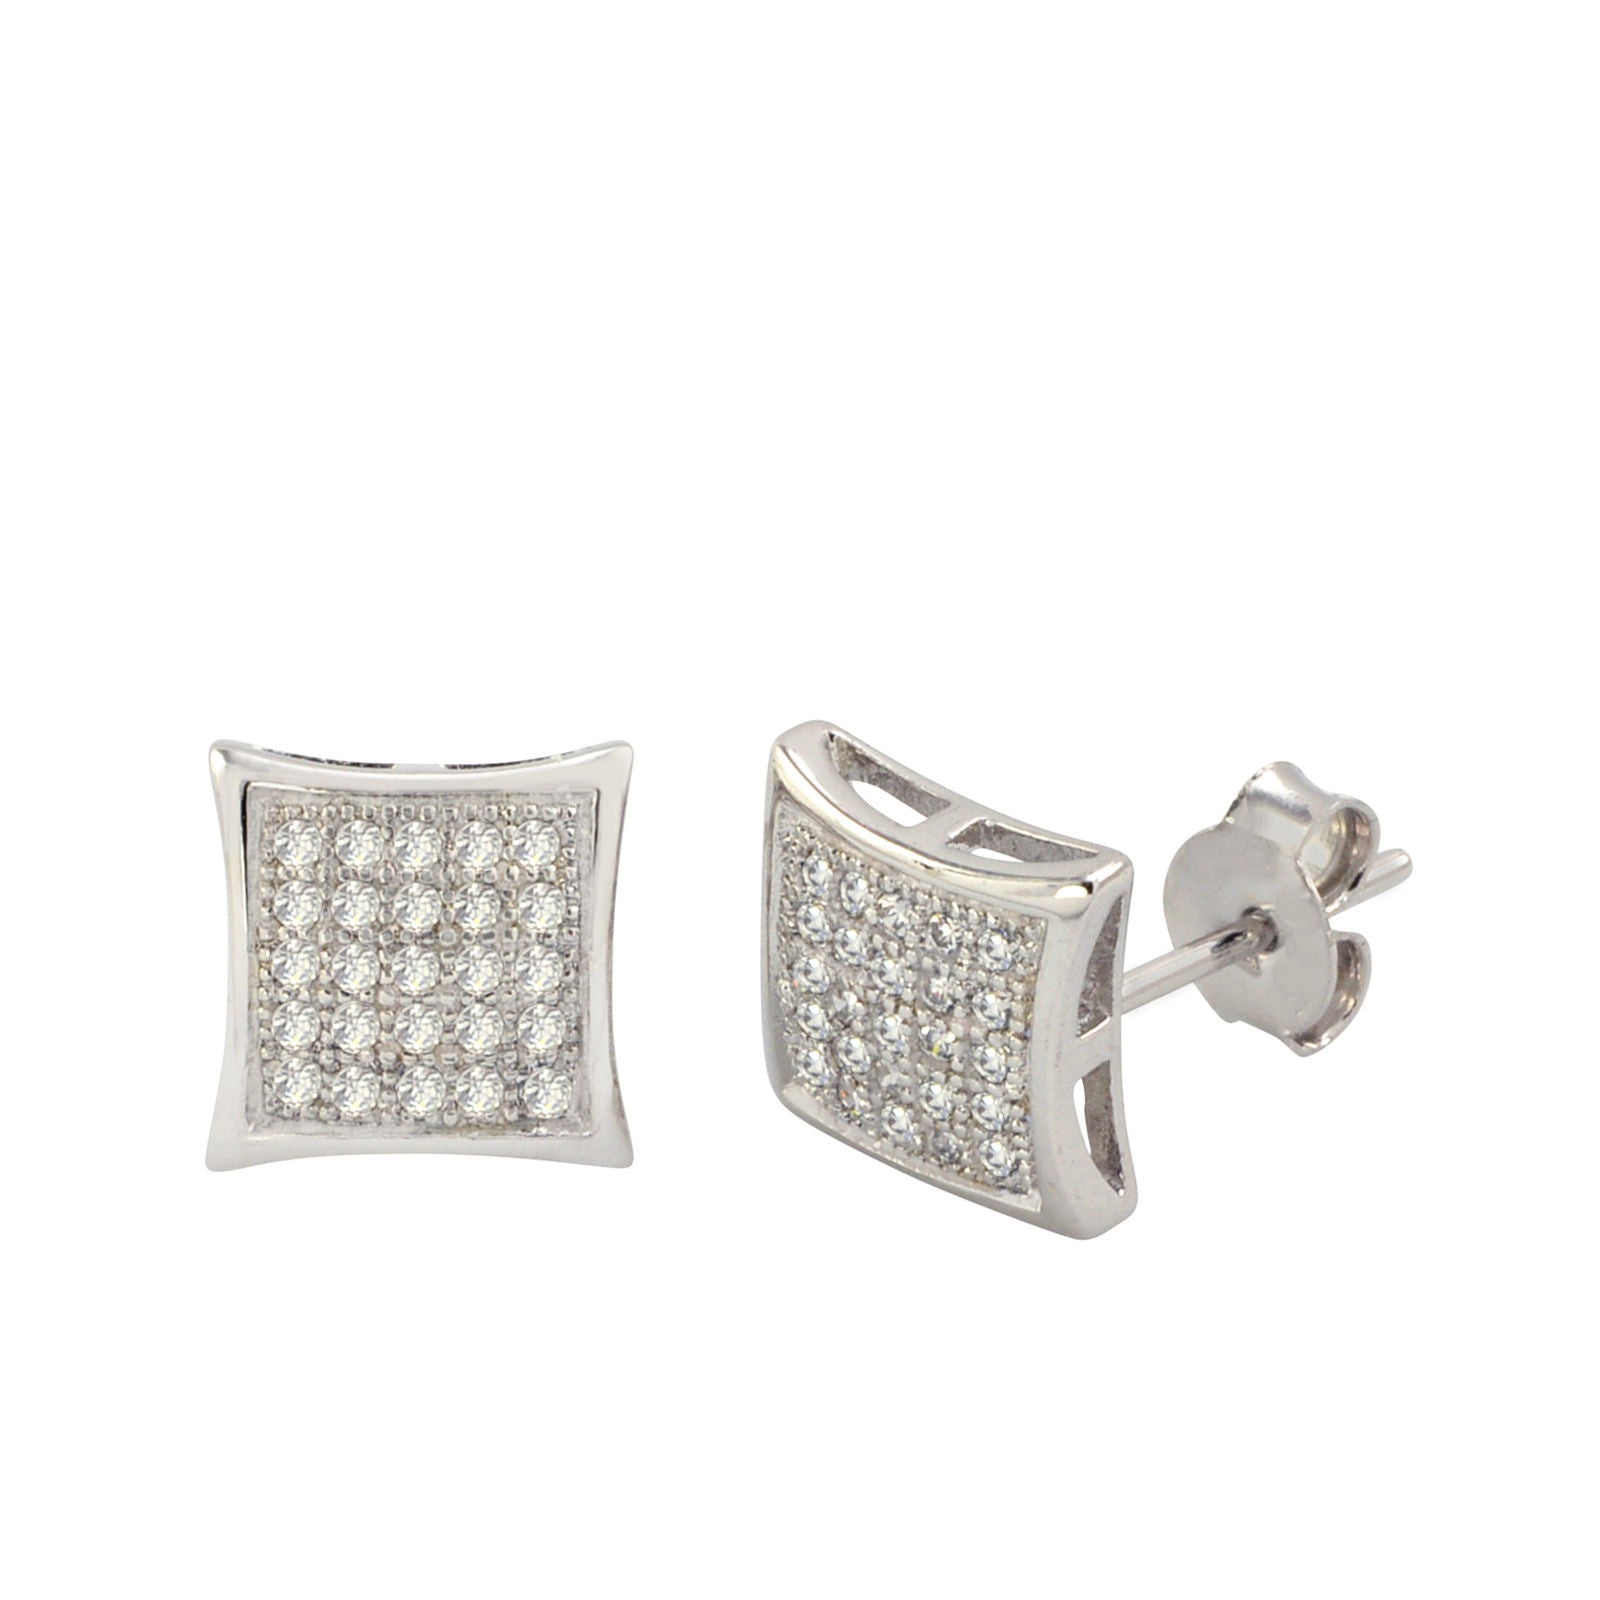 V Shape Stud Earrings in 925 Sterling Silver